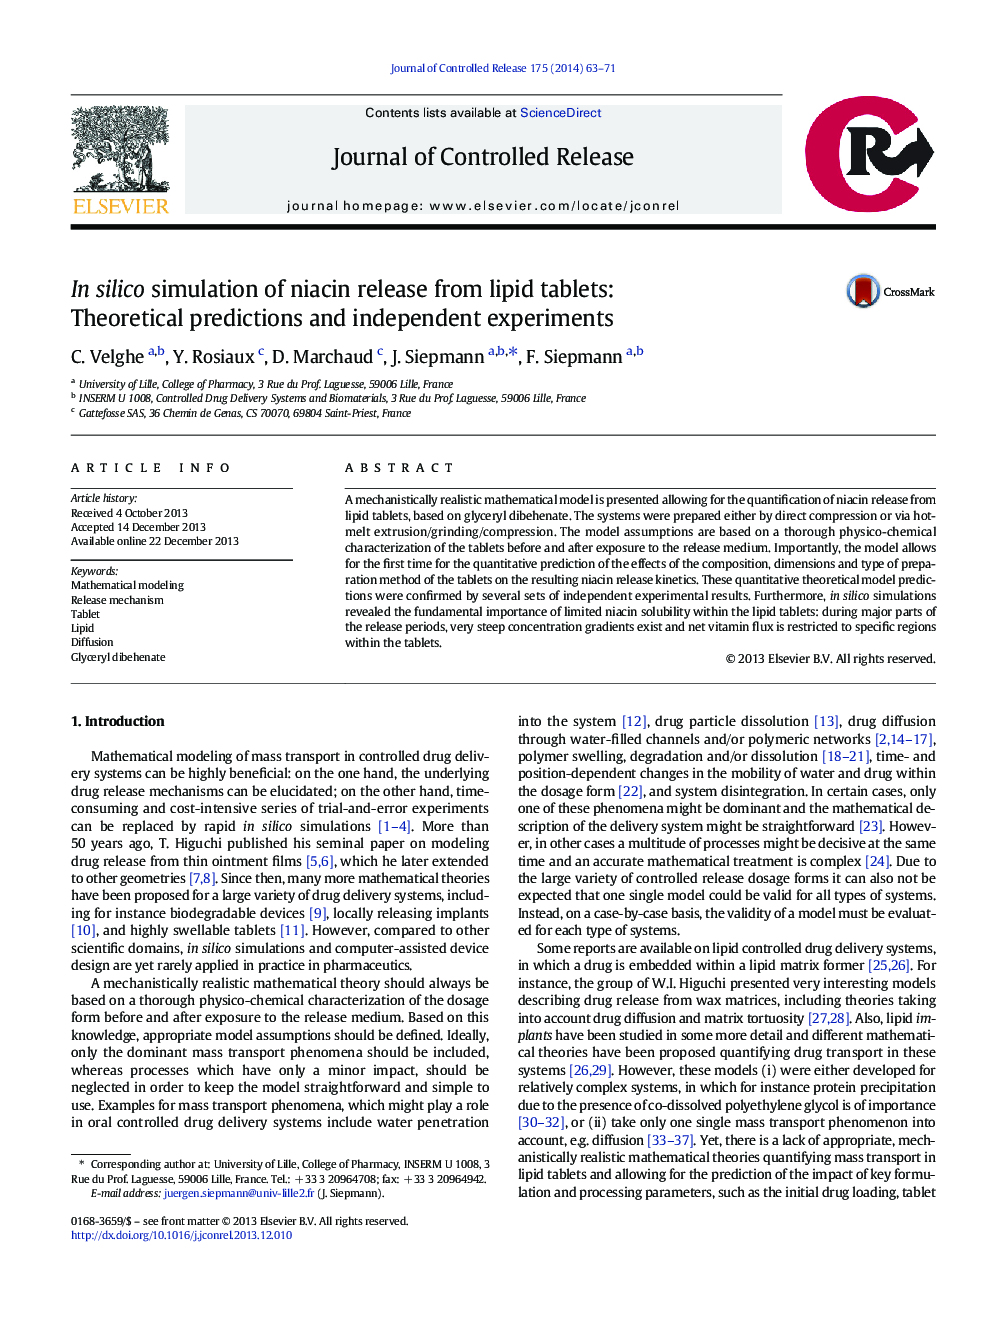 در شبیه سازی سیلیکا انتشار نایسین از قرص های چربی: پیش بینی های نظری و آزمایش های مستقل 